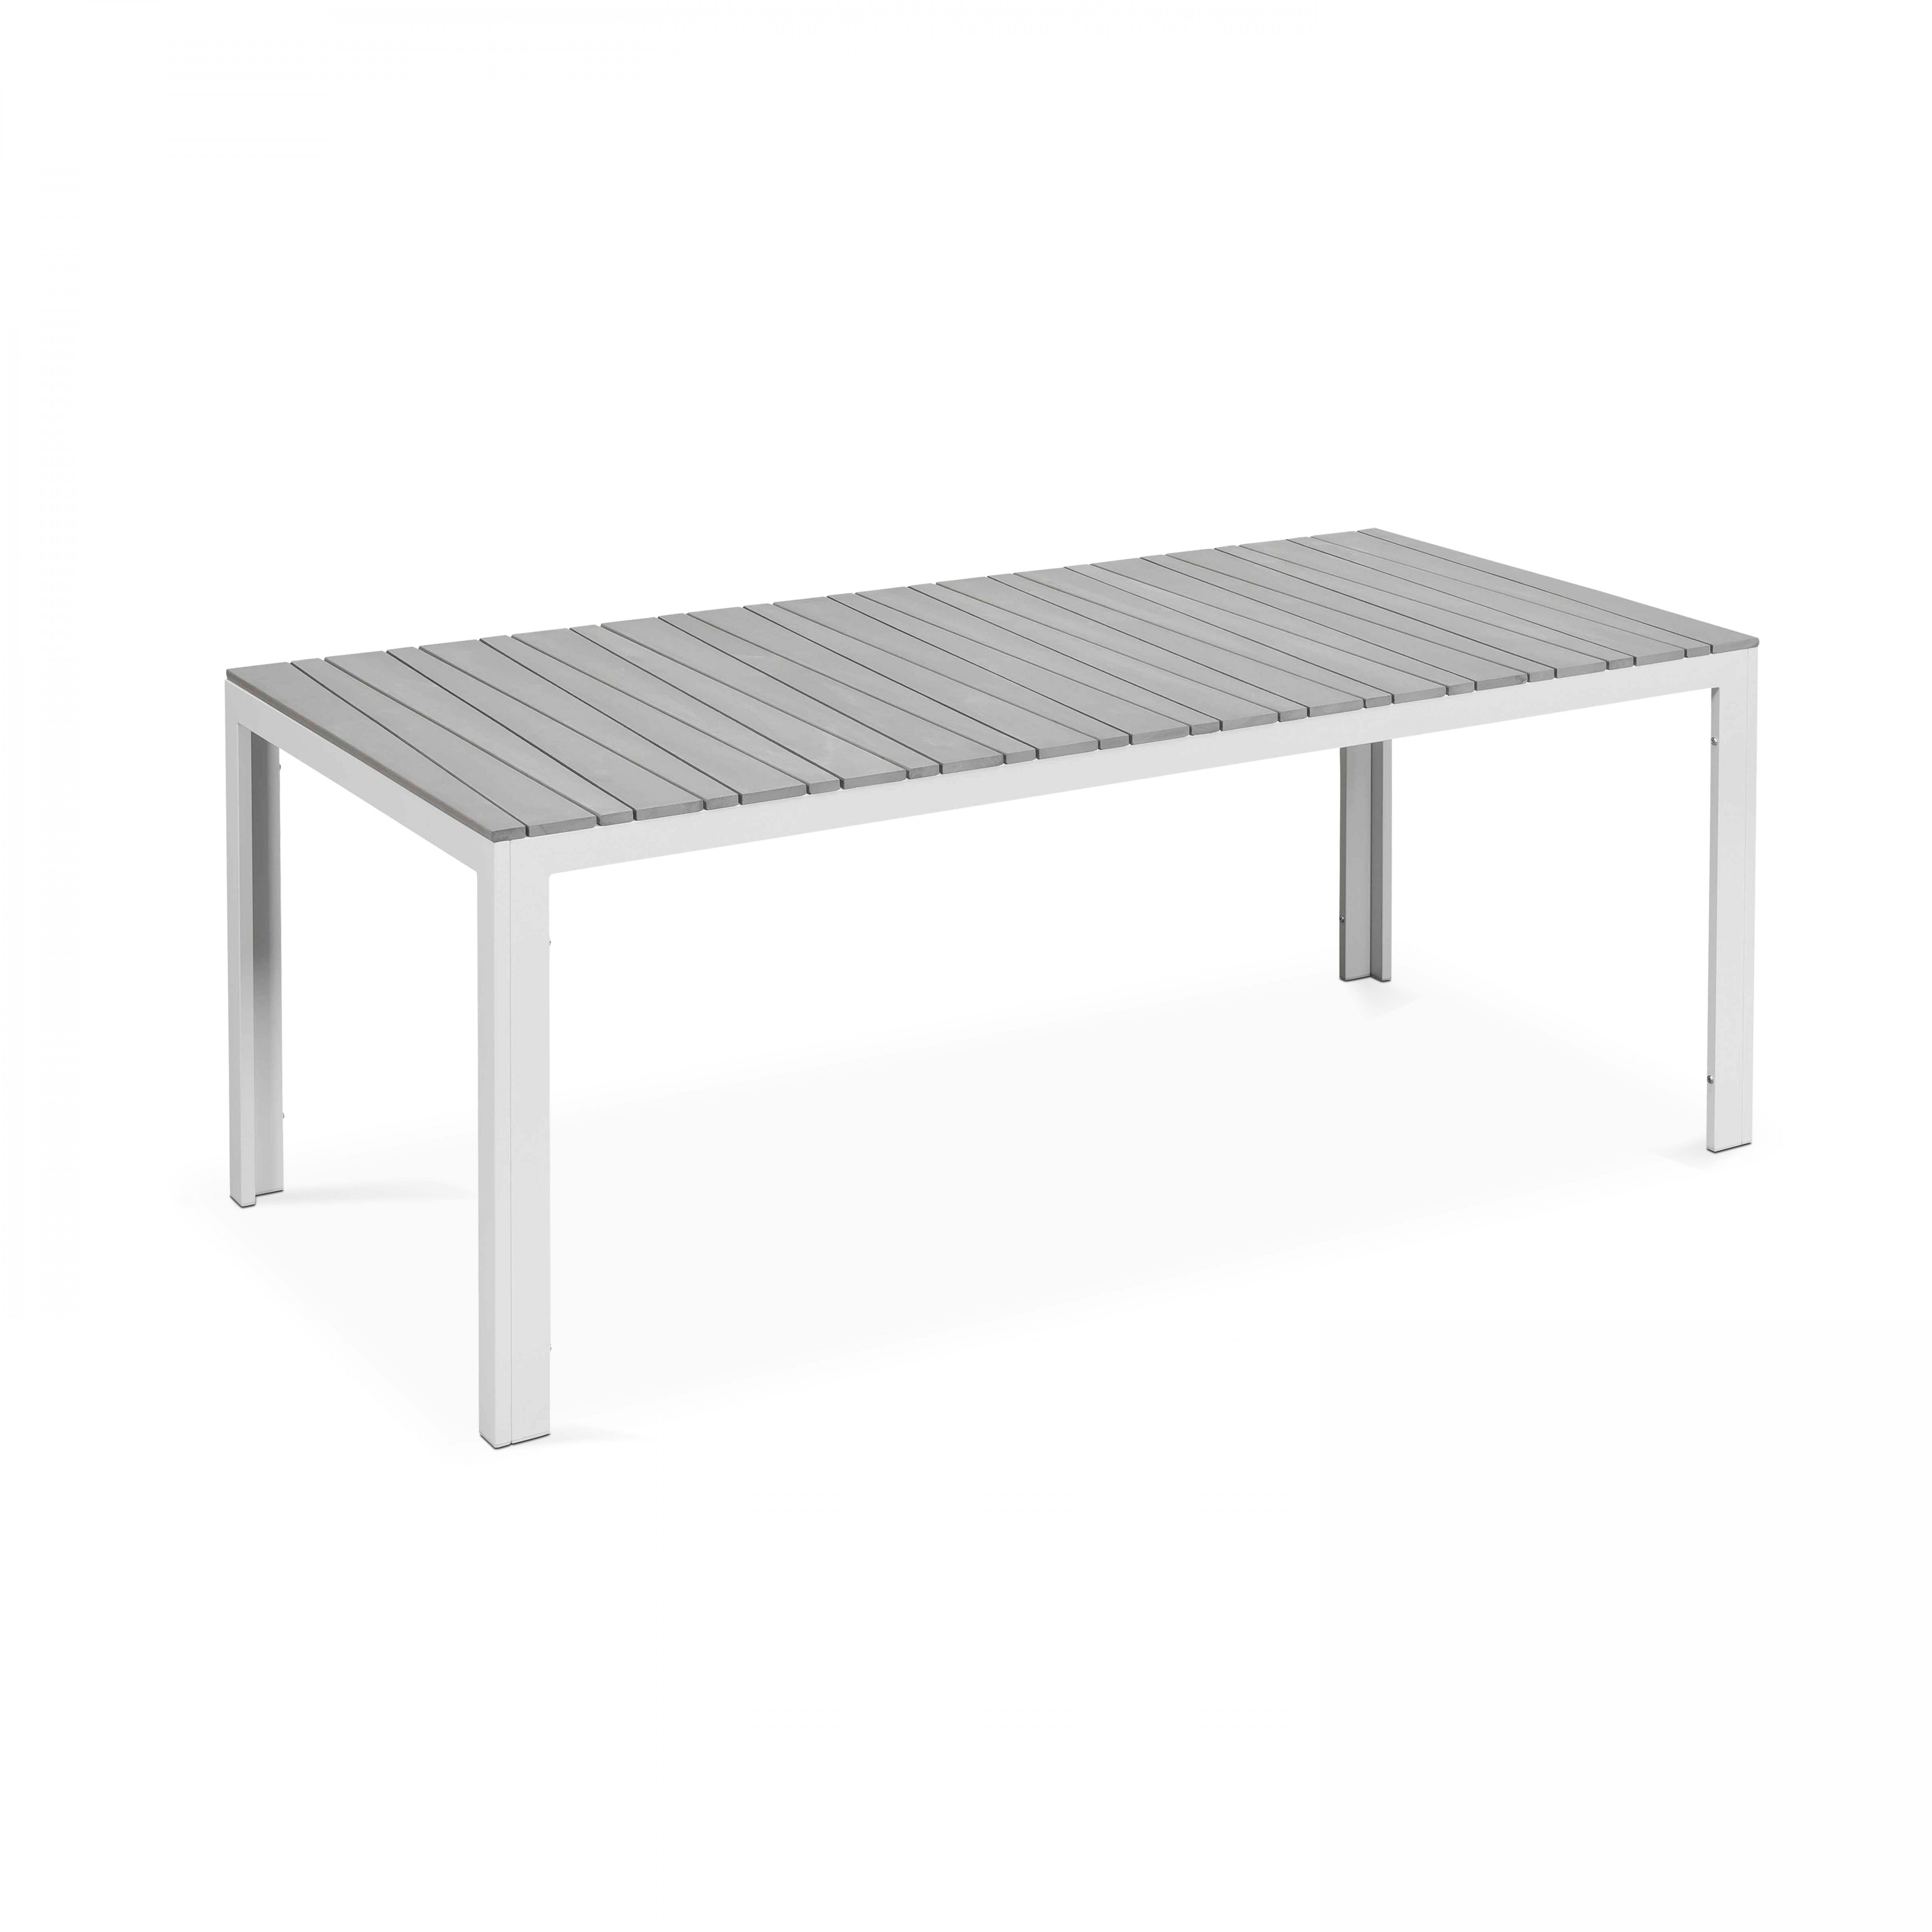 Table de jardin rectangulaire 8 personnes en aluminium et polywood (190 x 90 x 74 cm)